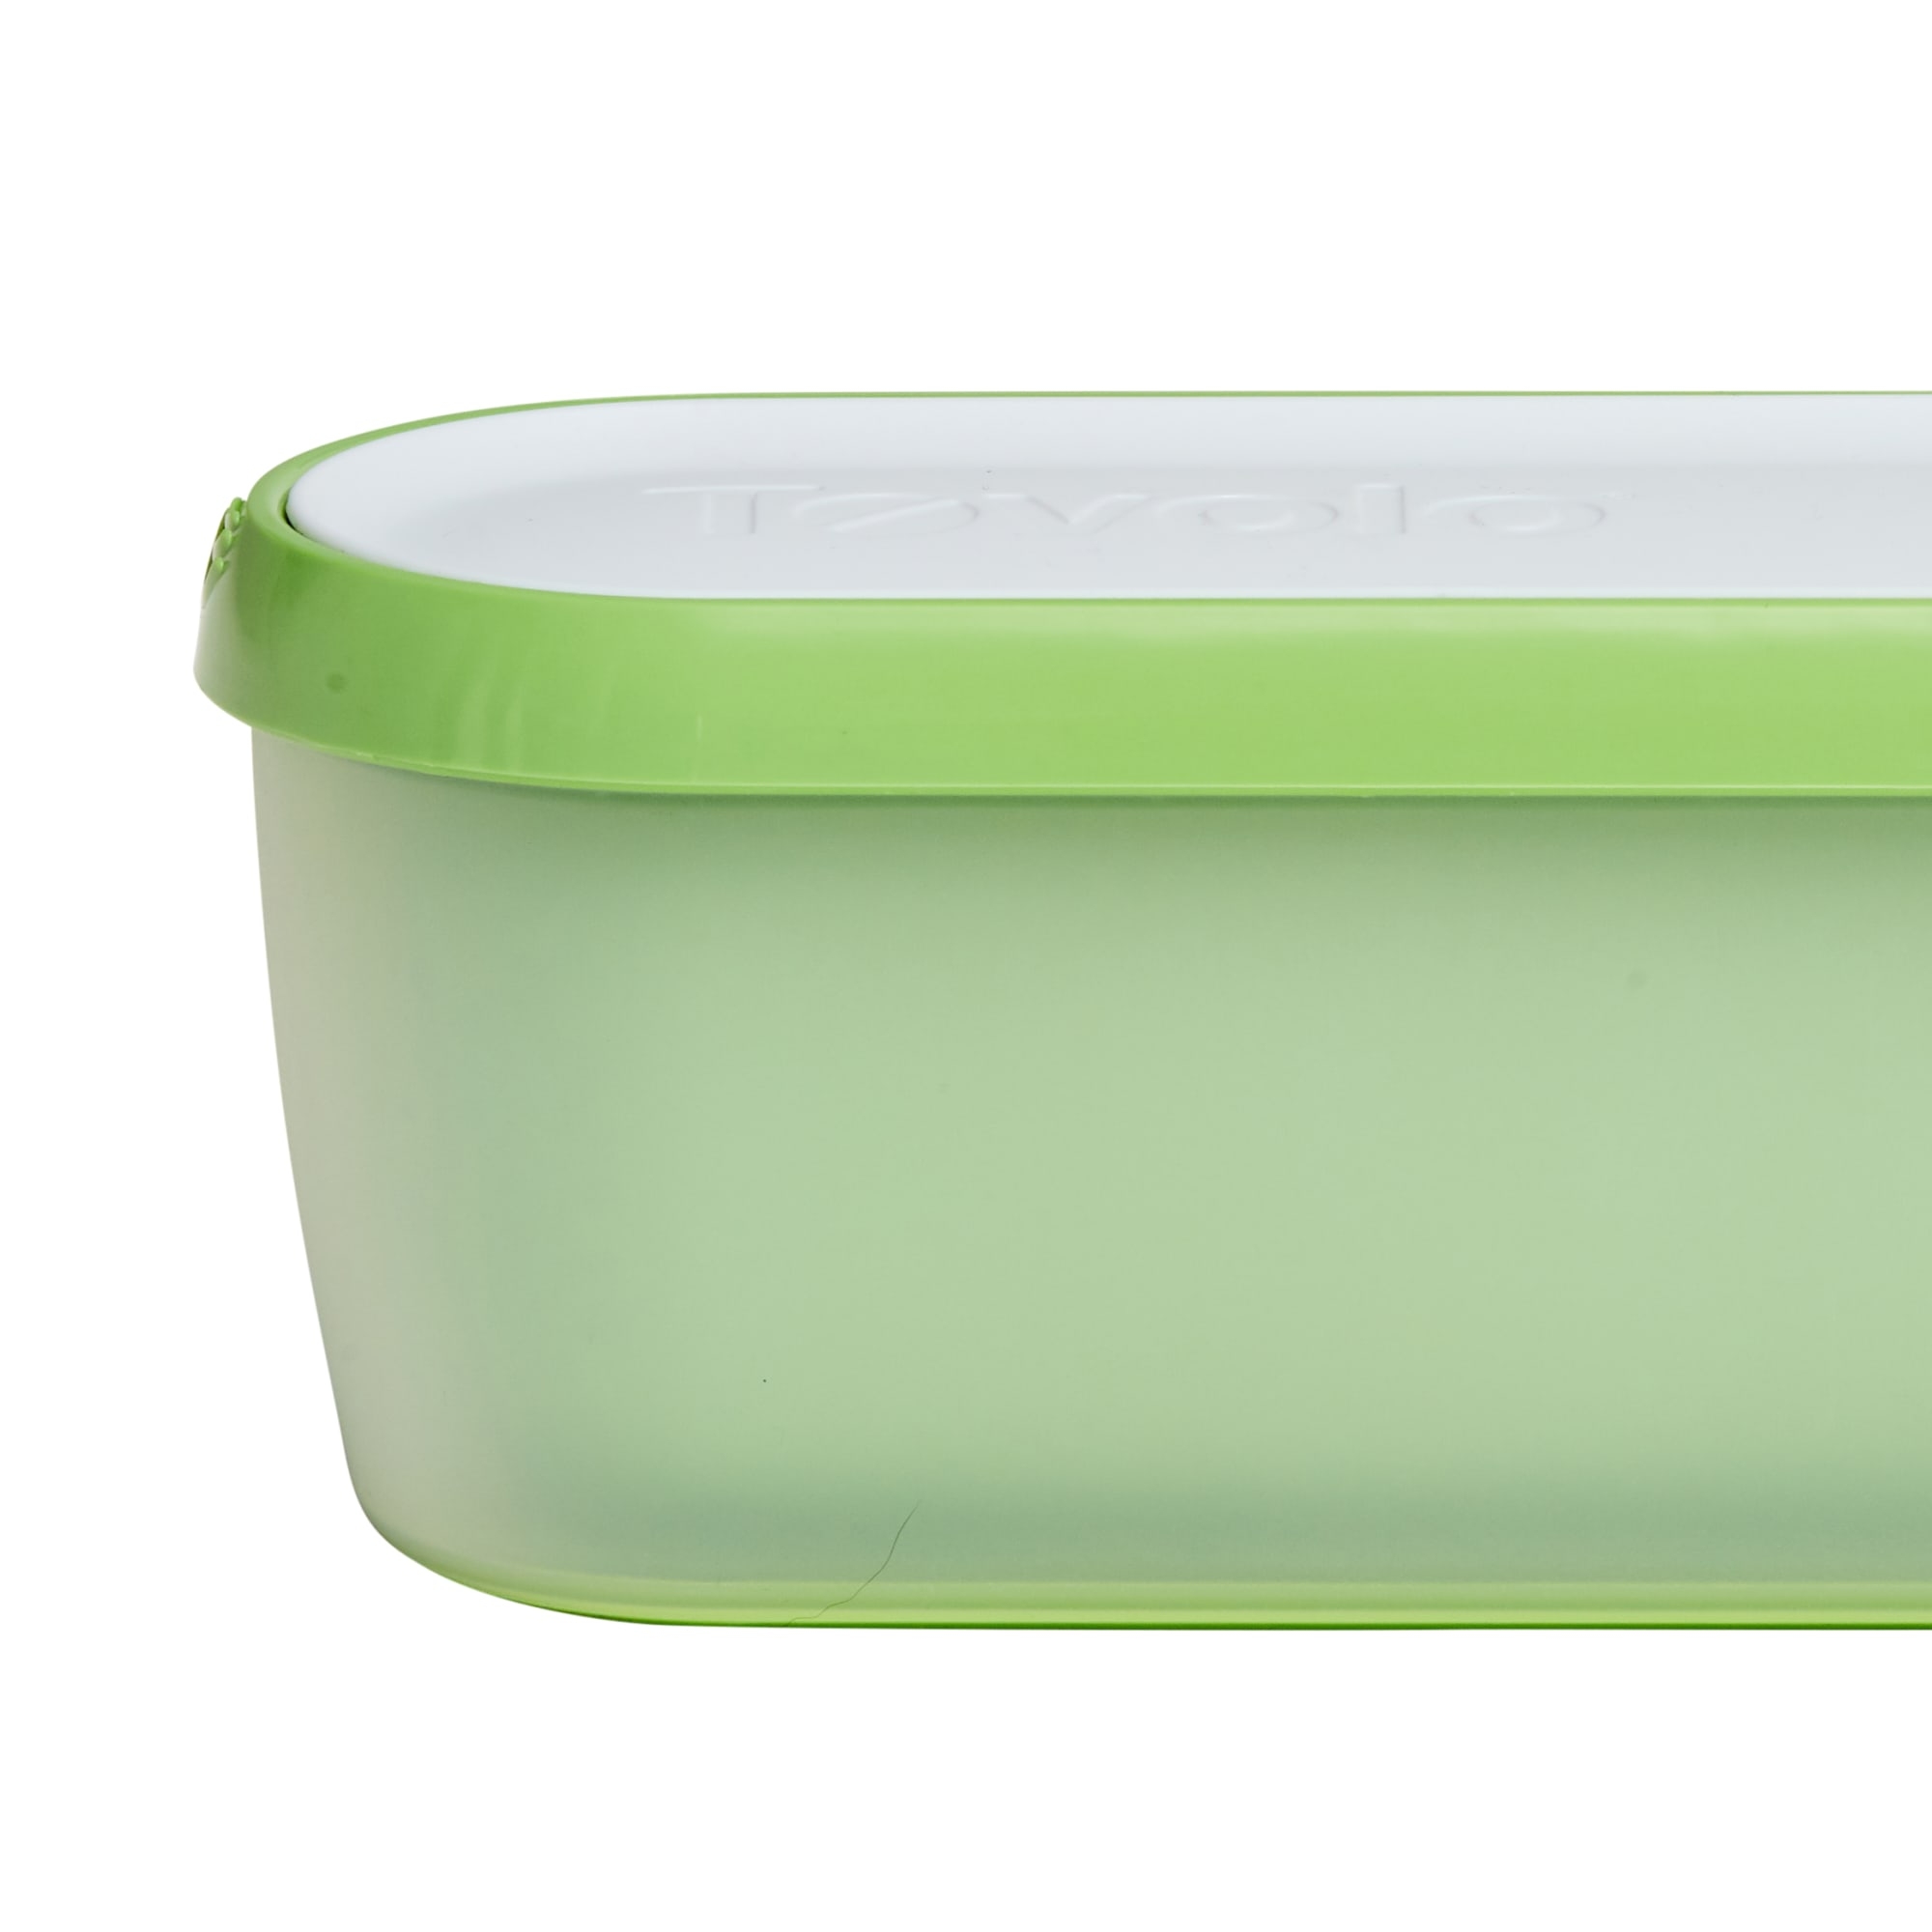 Tovolo Glide-A-Scoop Ice Cream Tub 1.4L Green Image 2